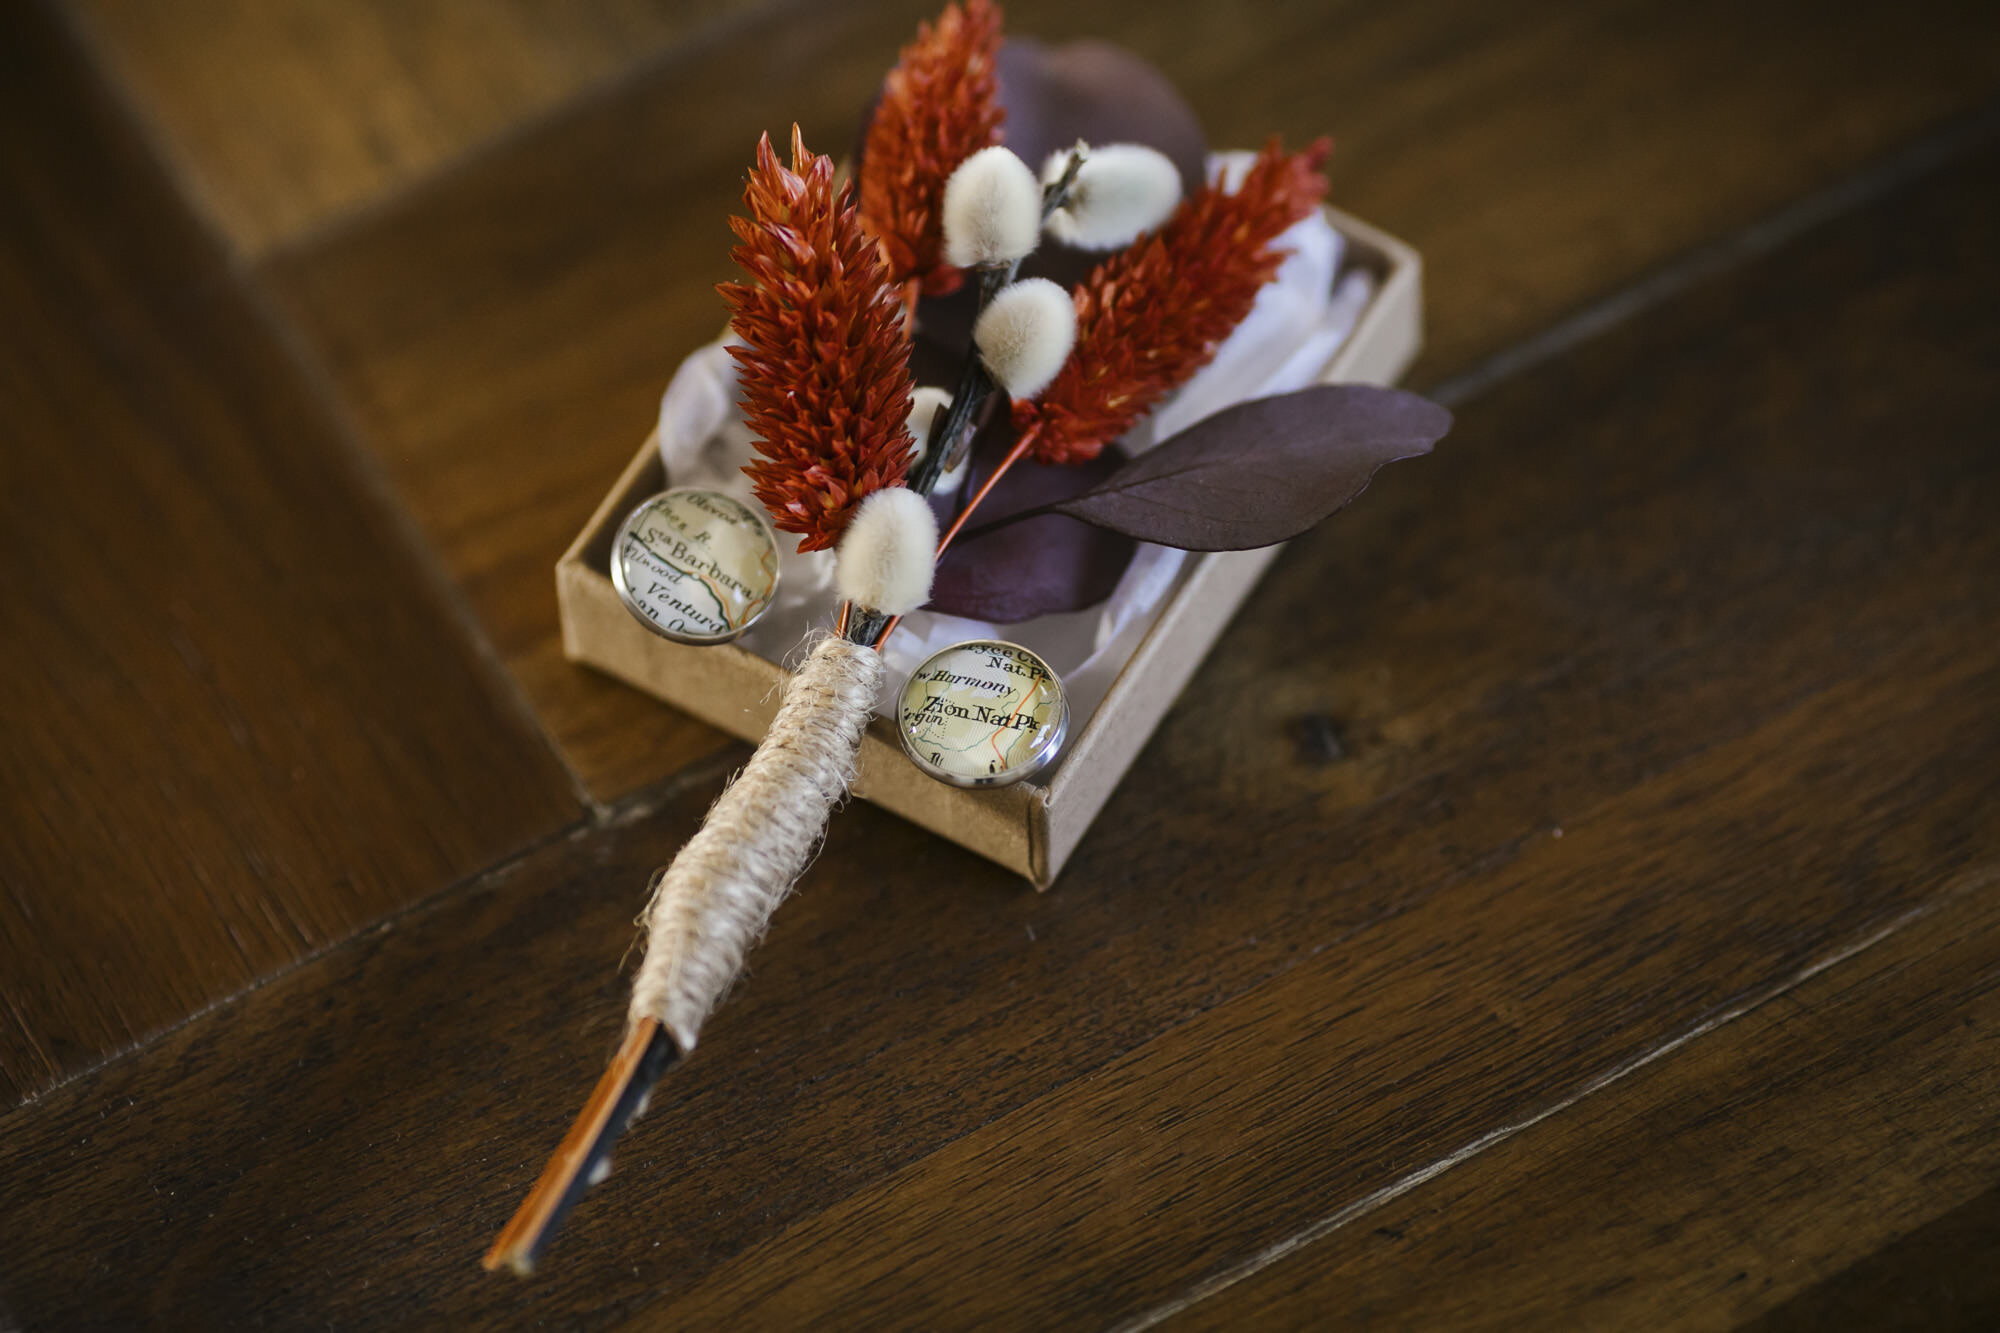 Artificial flower boutonniere and custom map wedding cufflinks